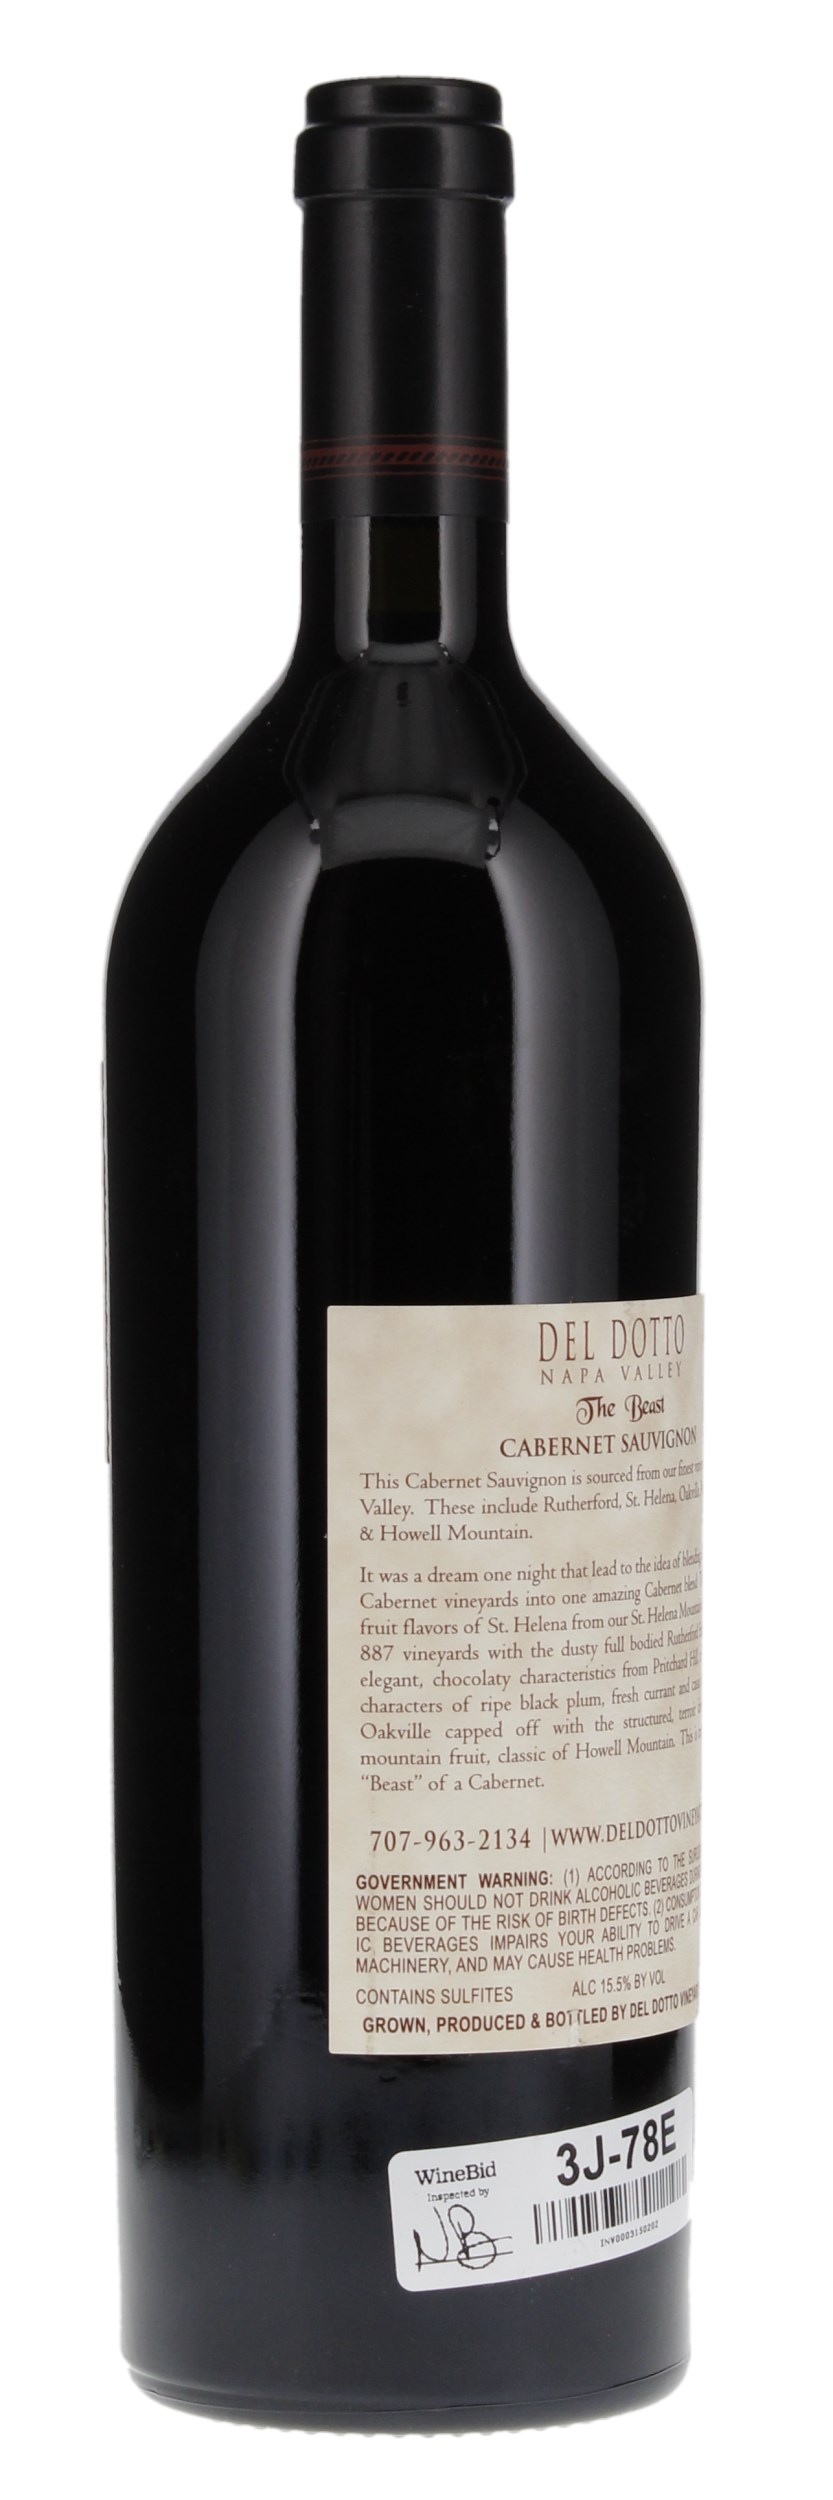 2014 Del Dotto The Beast Cabernet Sauvignon, 750ml